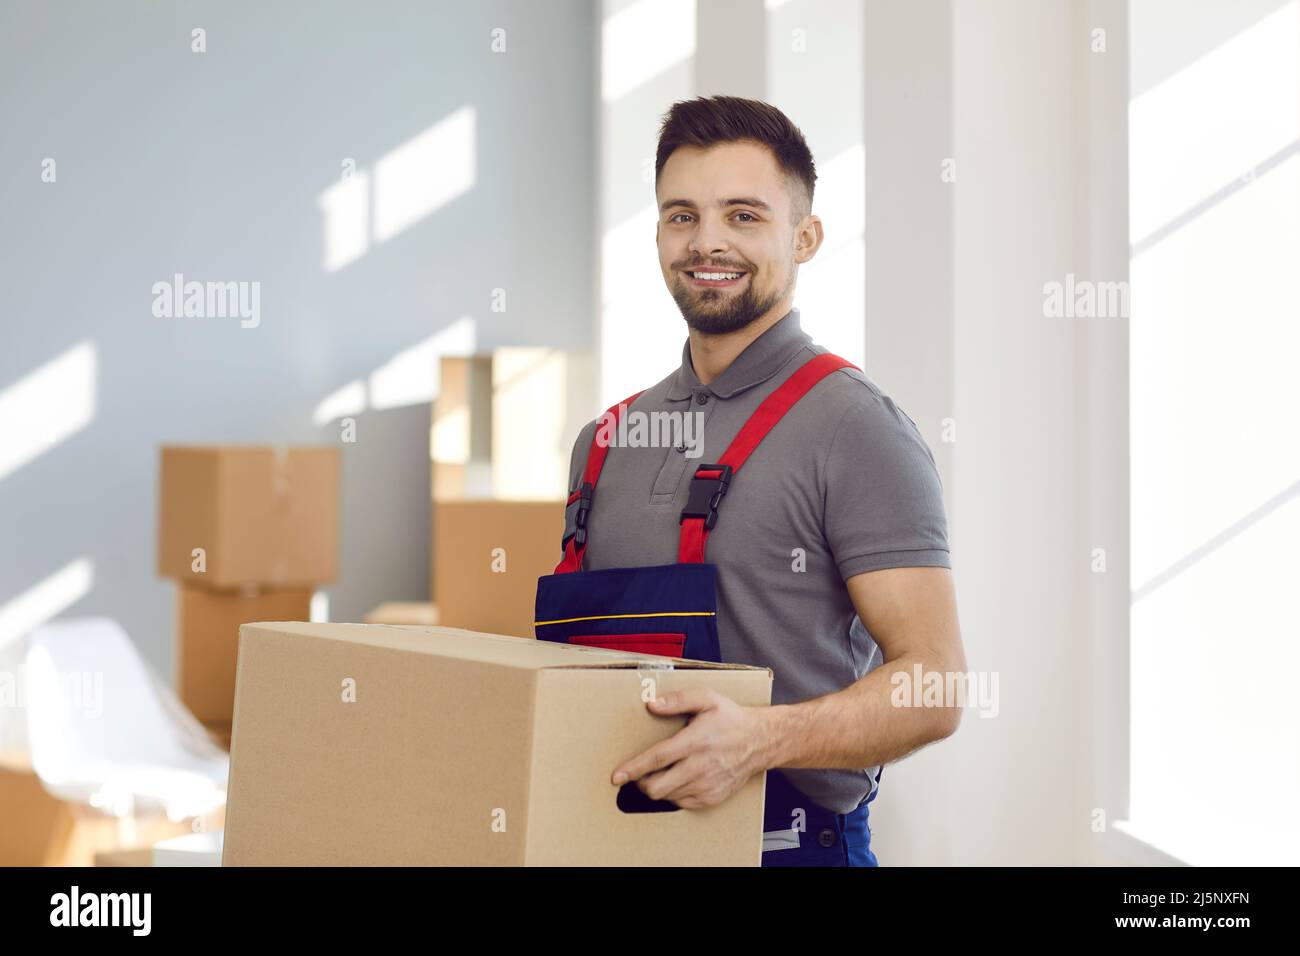 Un service de livraison heureux ou un travailleur de l'entreprise en mouvement tenant une boîte en carton et souriant Banque D'Images